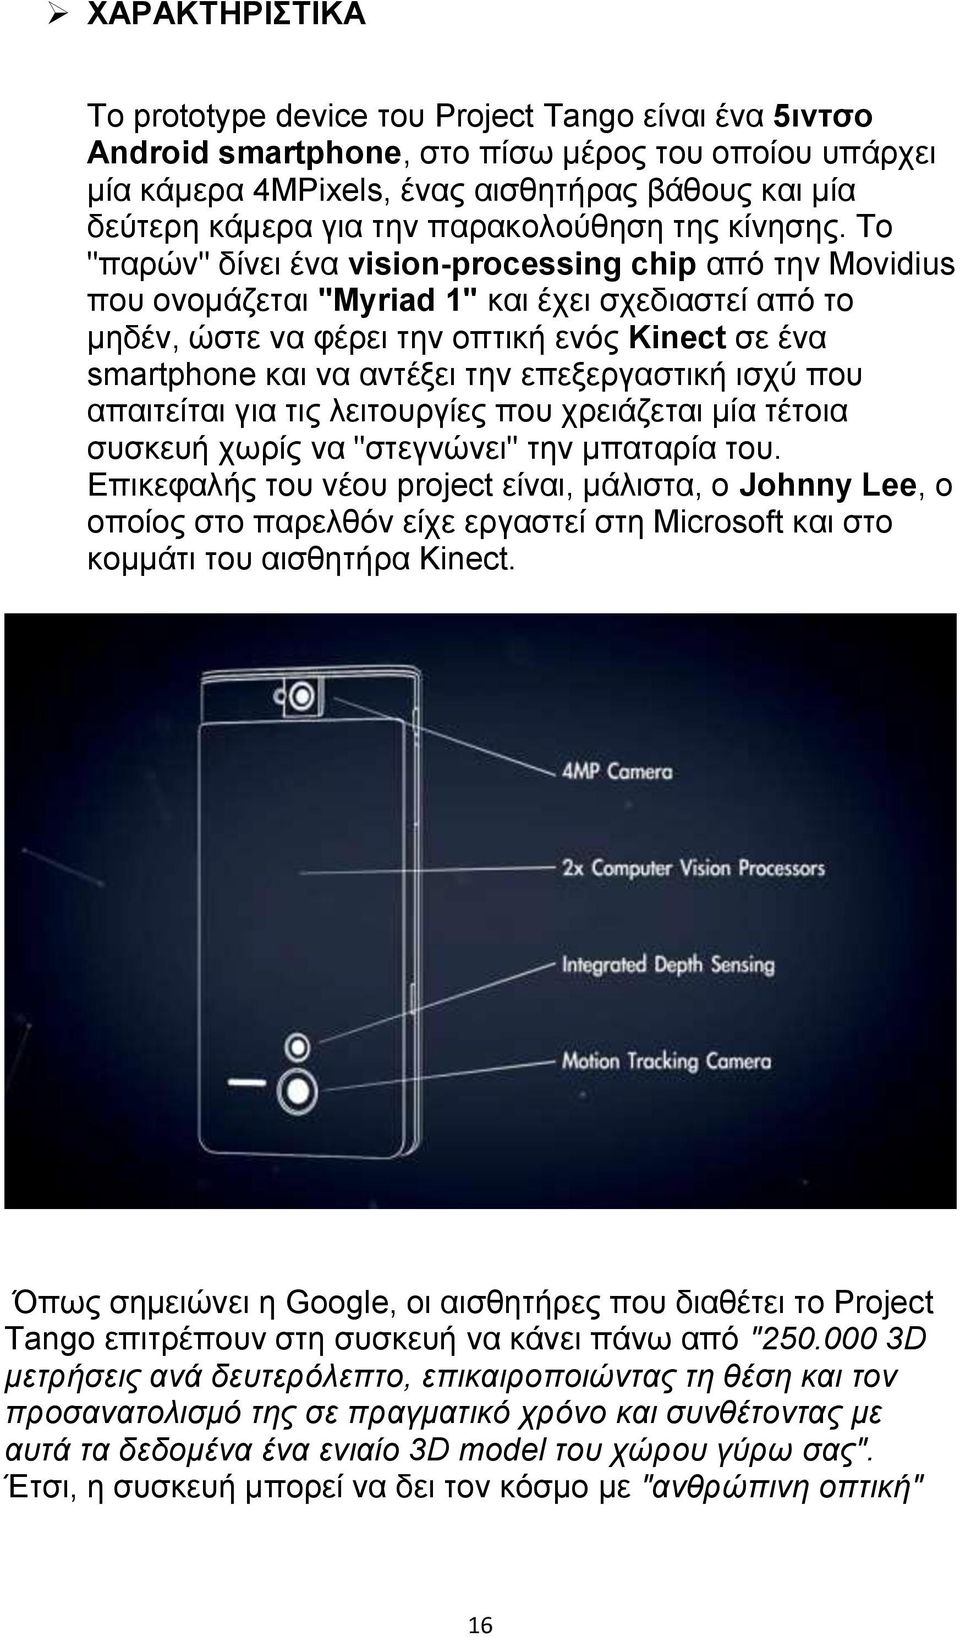 Το "παρών" δίνει ένα vision-processing chip από την Movidius που ονομάζεται "Myriad 1" και έχει σχεδιαστεί από το μηδέν, ώστε να φέρει την οπτική ενός Kinect σε ένα smartphone και να αντέξει την